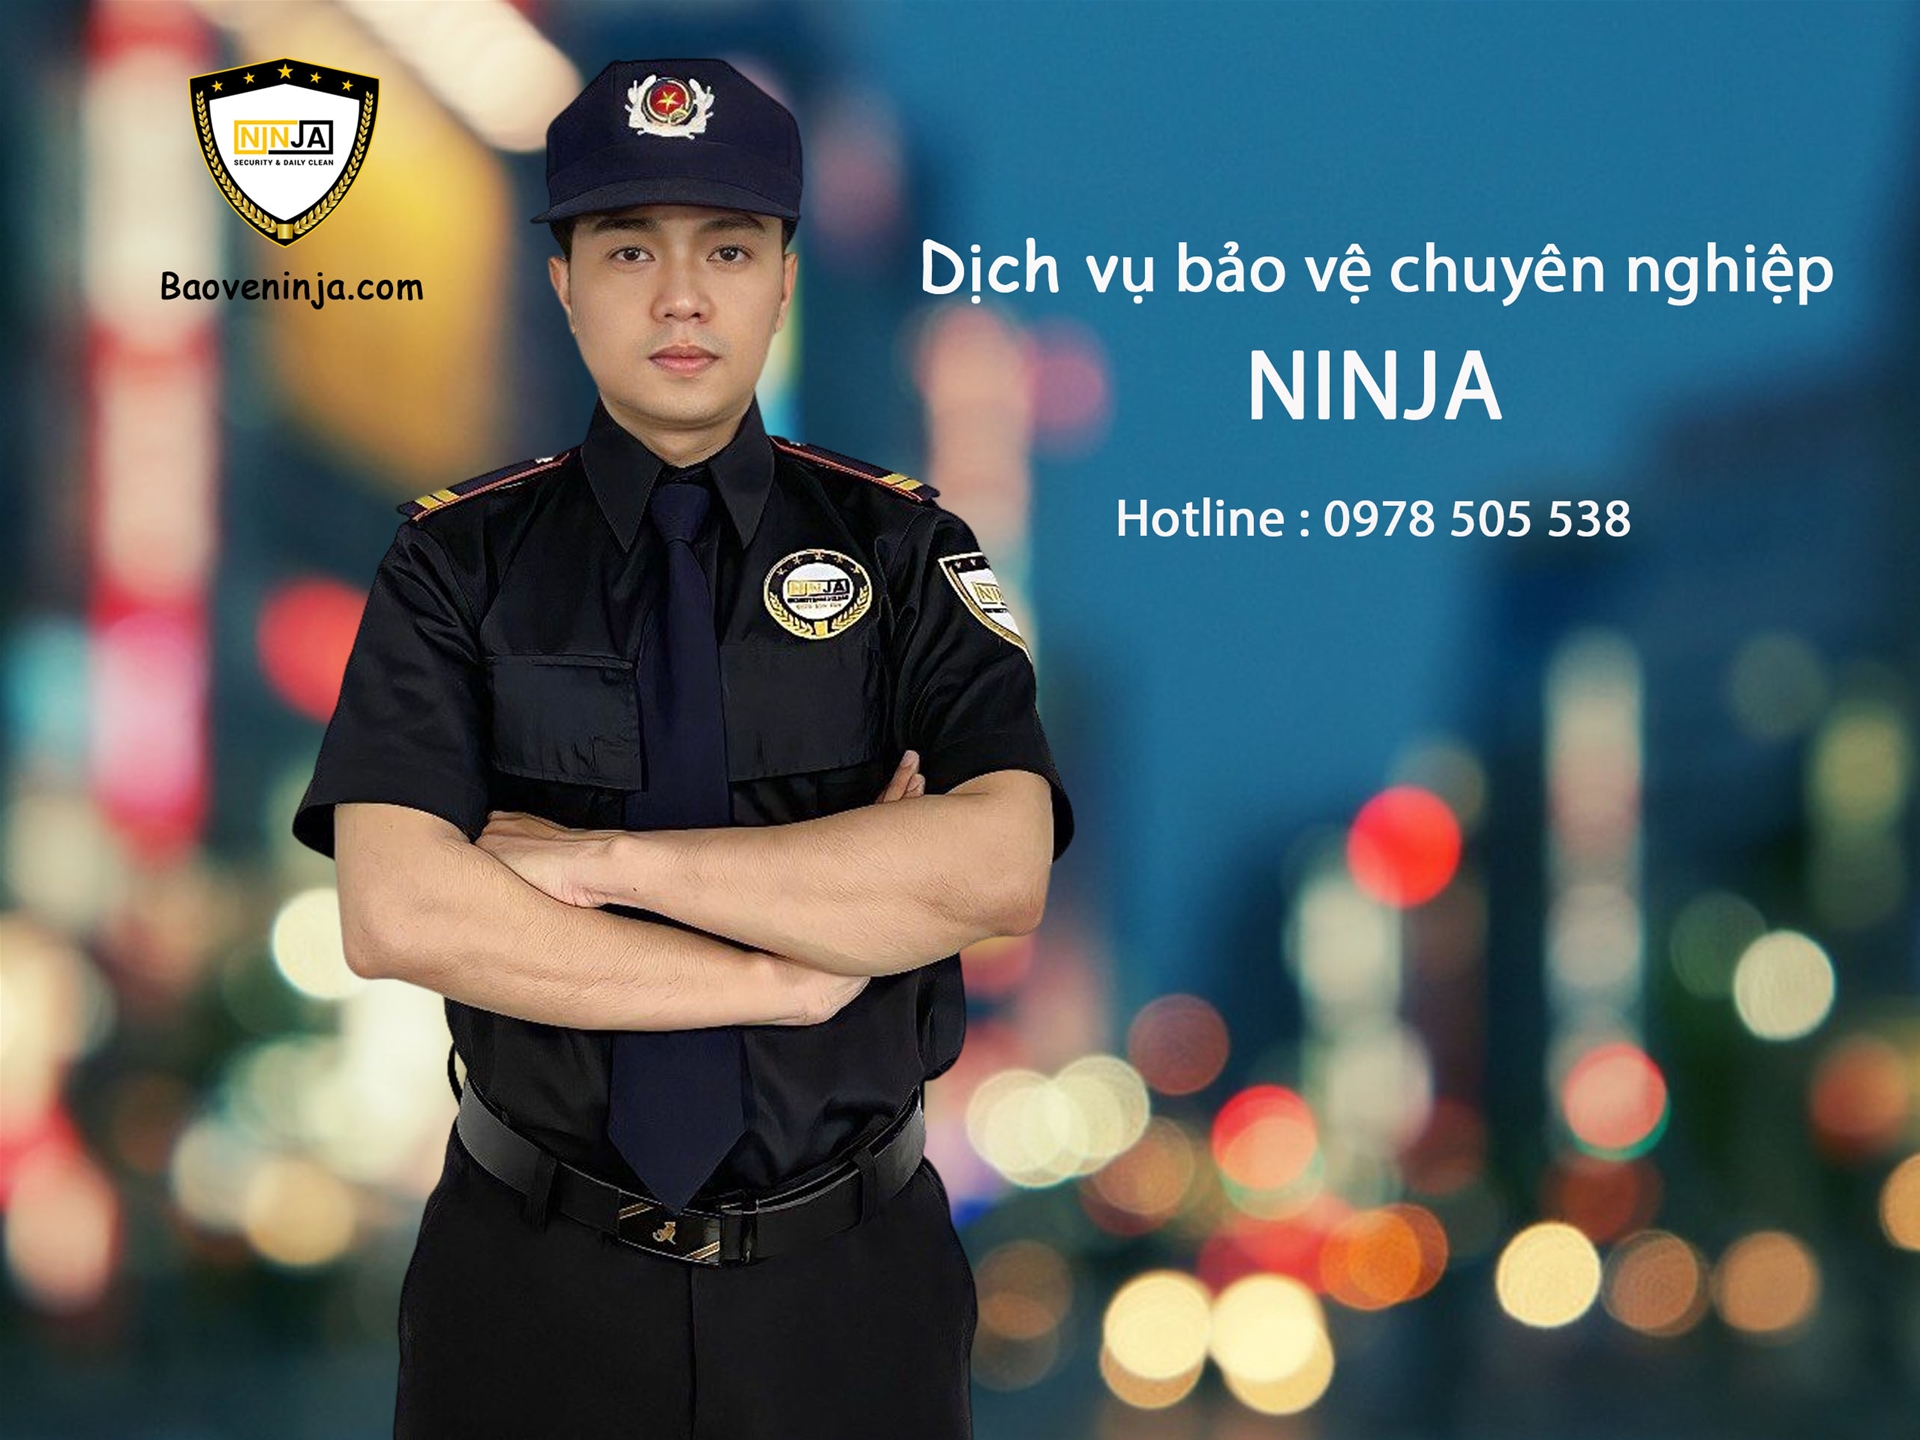 Cam kết của dịch vụ bảo vệ Ninja